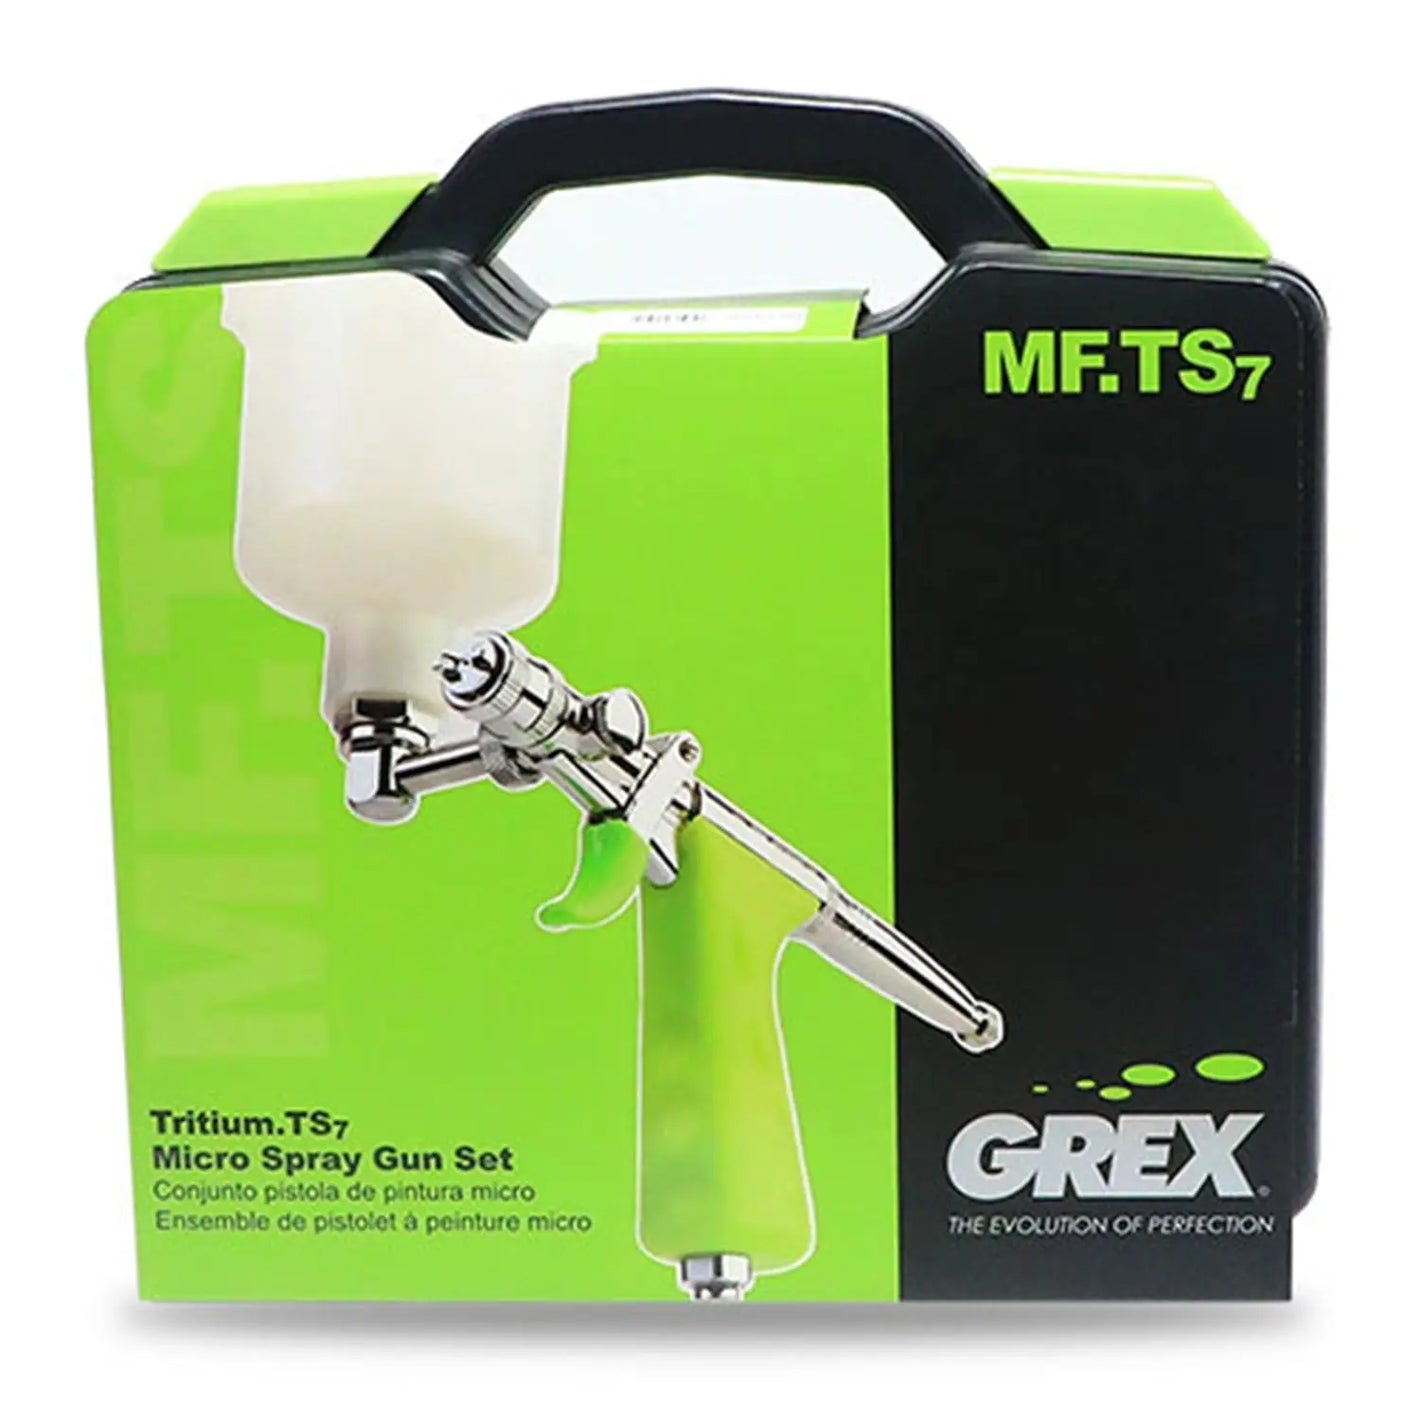 Grex Tritium.TS Micro Spray Gun Set 0.7mm Grex Airbrush